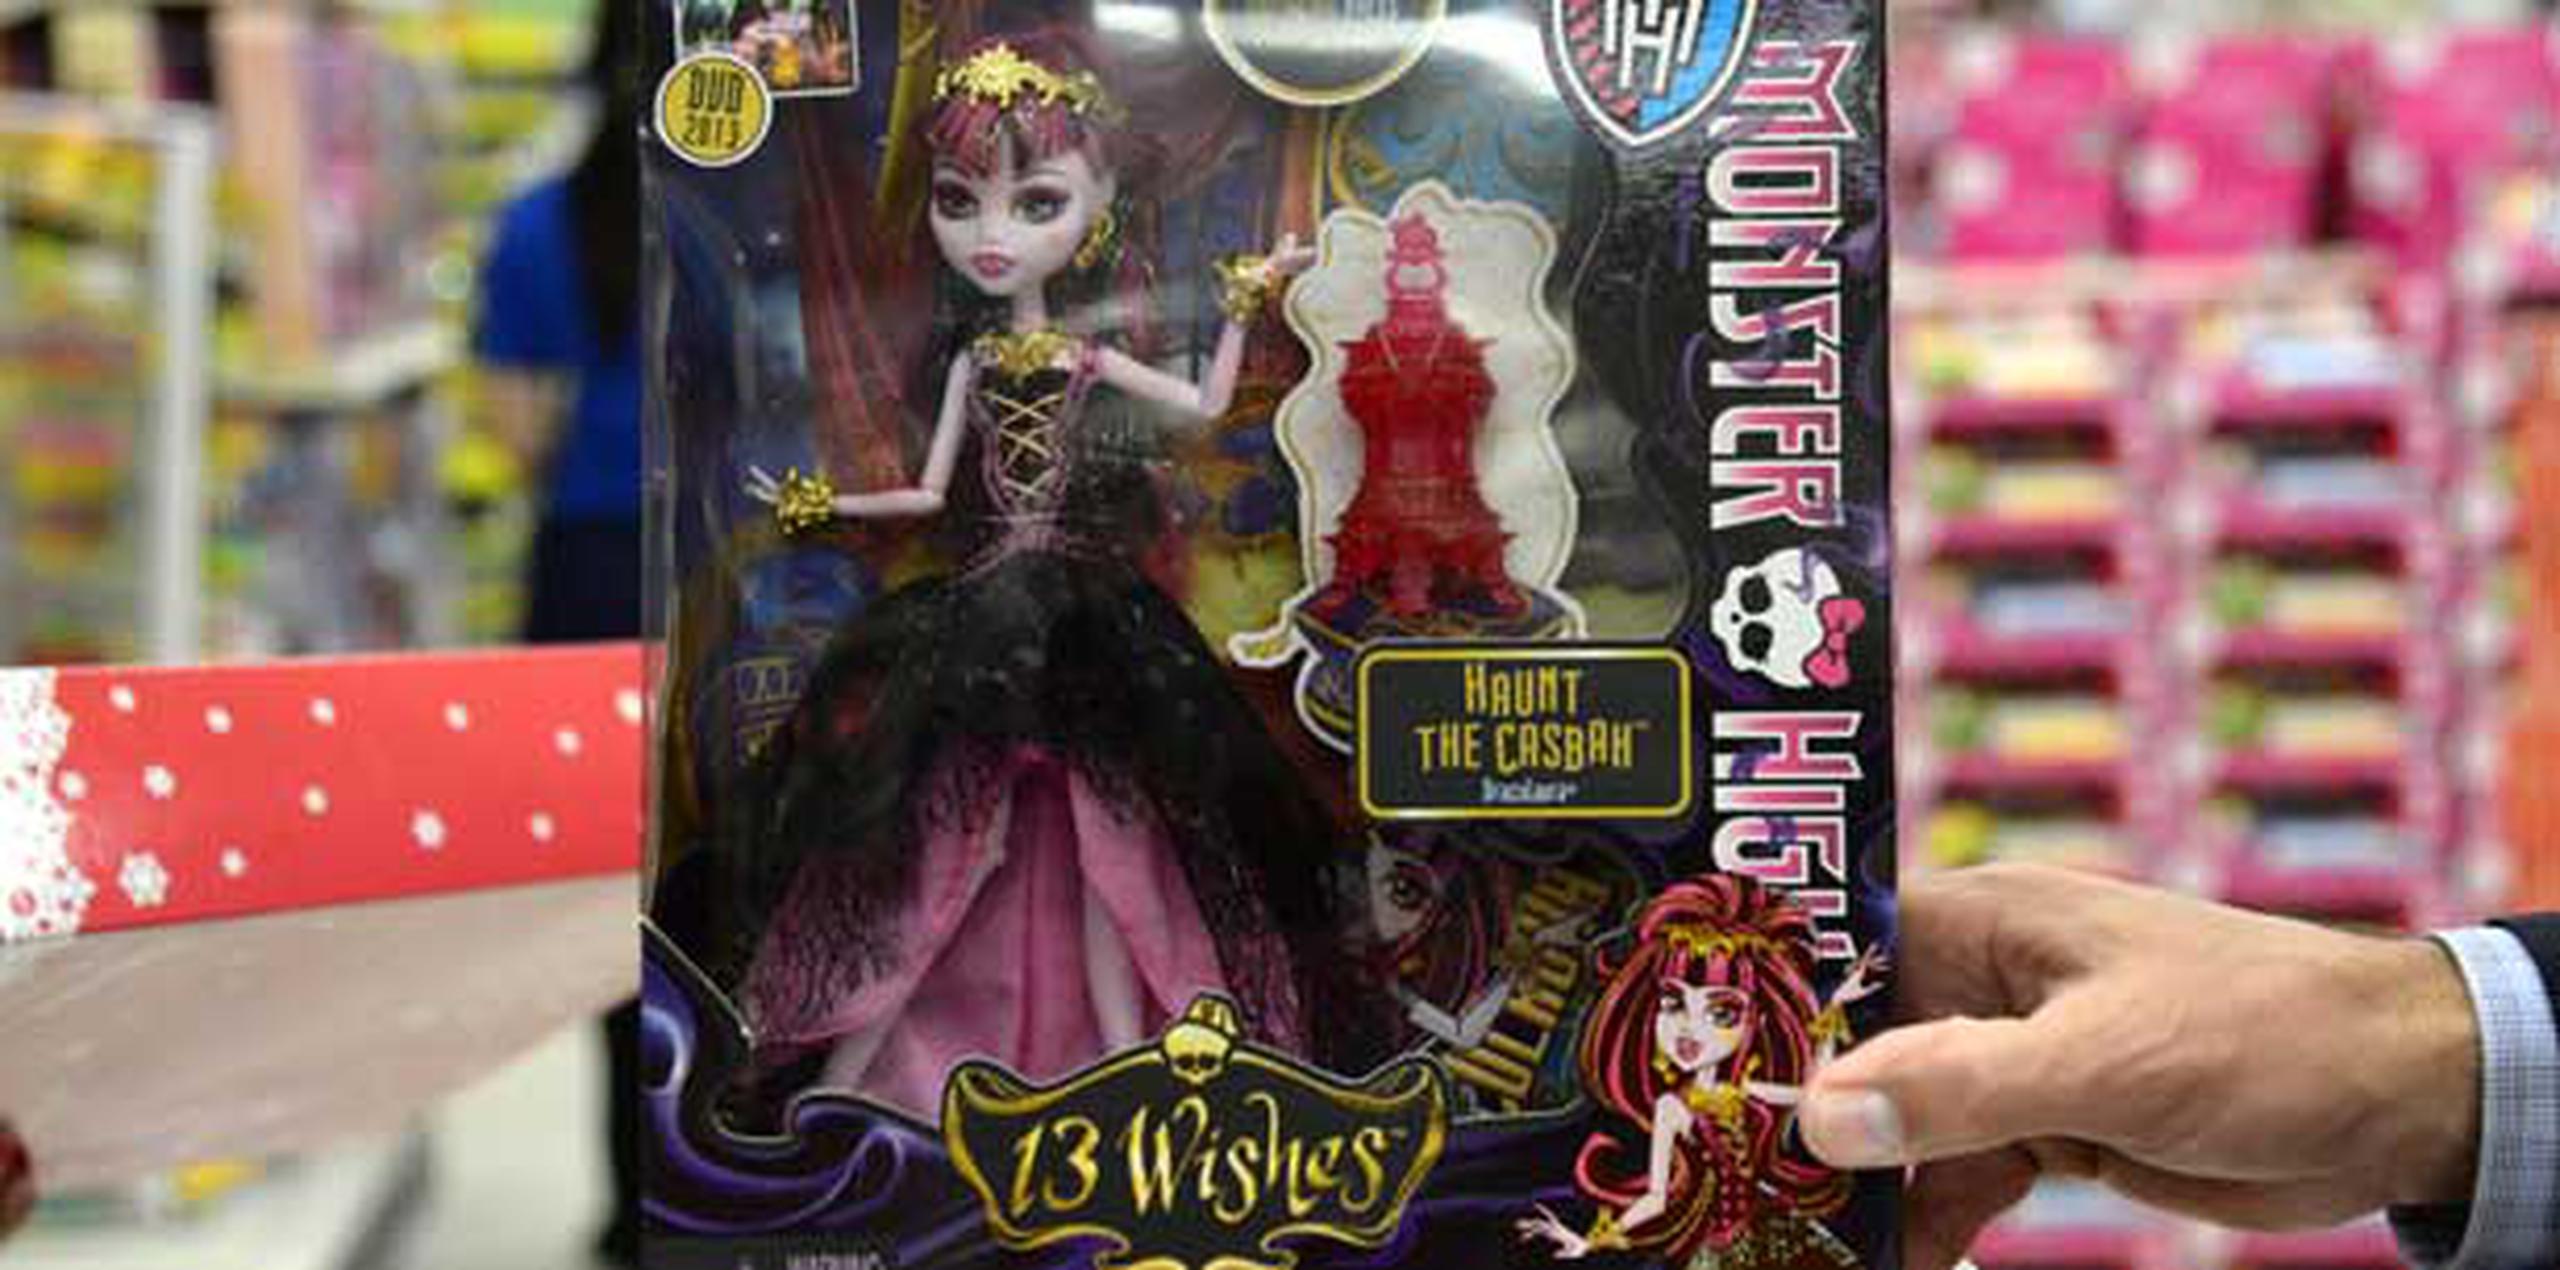 Las muñecas Lalaloopsy y las Monster High han desplazado a Barbie. (carlos.giusti@gfrmedia.com)